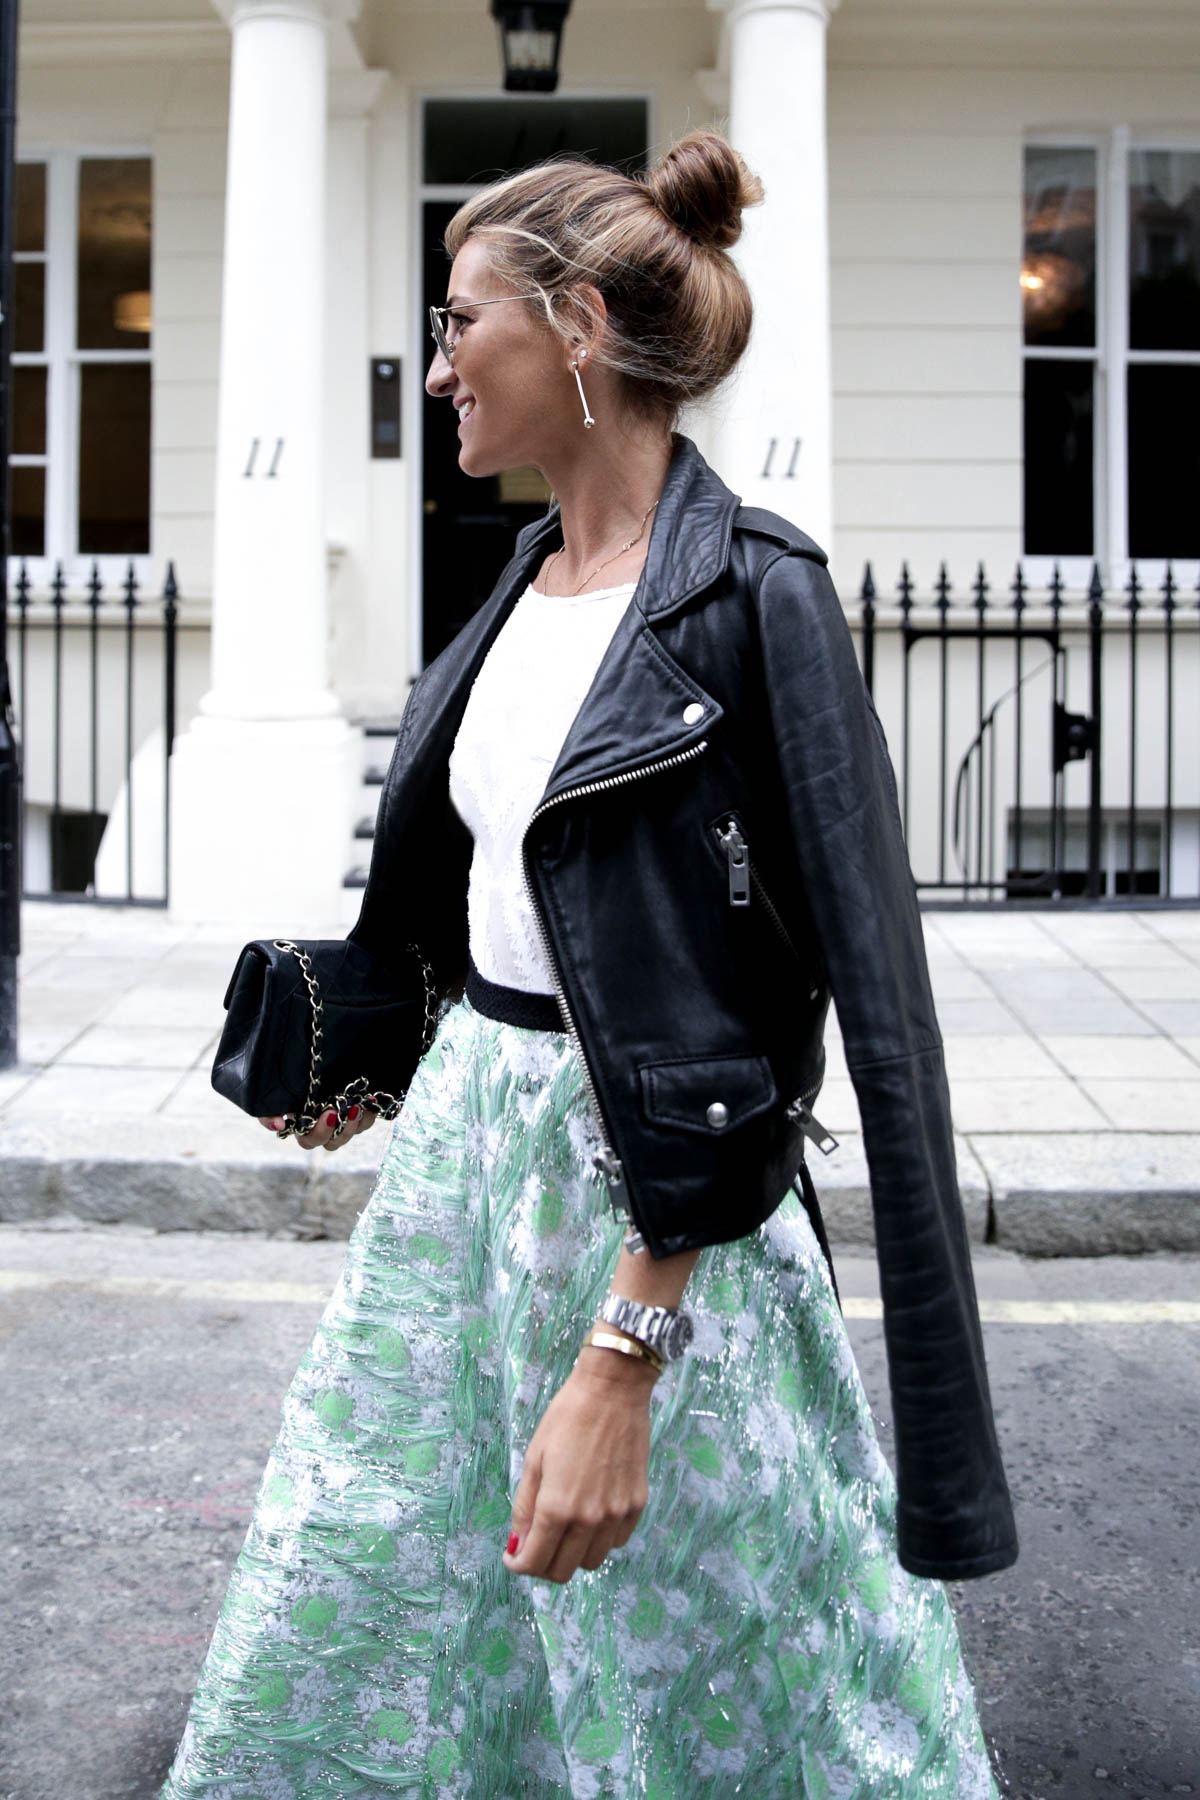 london-londres-dress-vestido-lady-lfw-fashion-week-emilio-de-la-morena-miu-miu-ballerinas-chanel-vintage-bag-look-bartabac-outfit-moda-blogger-10